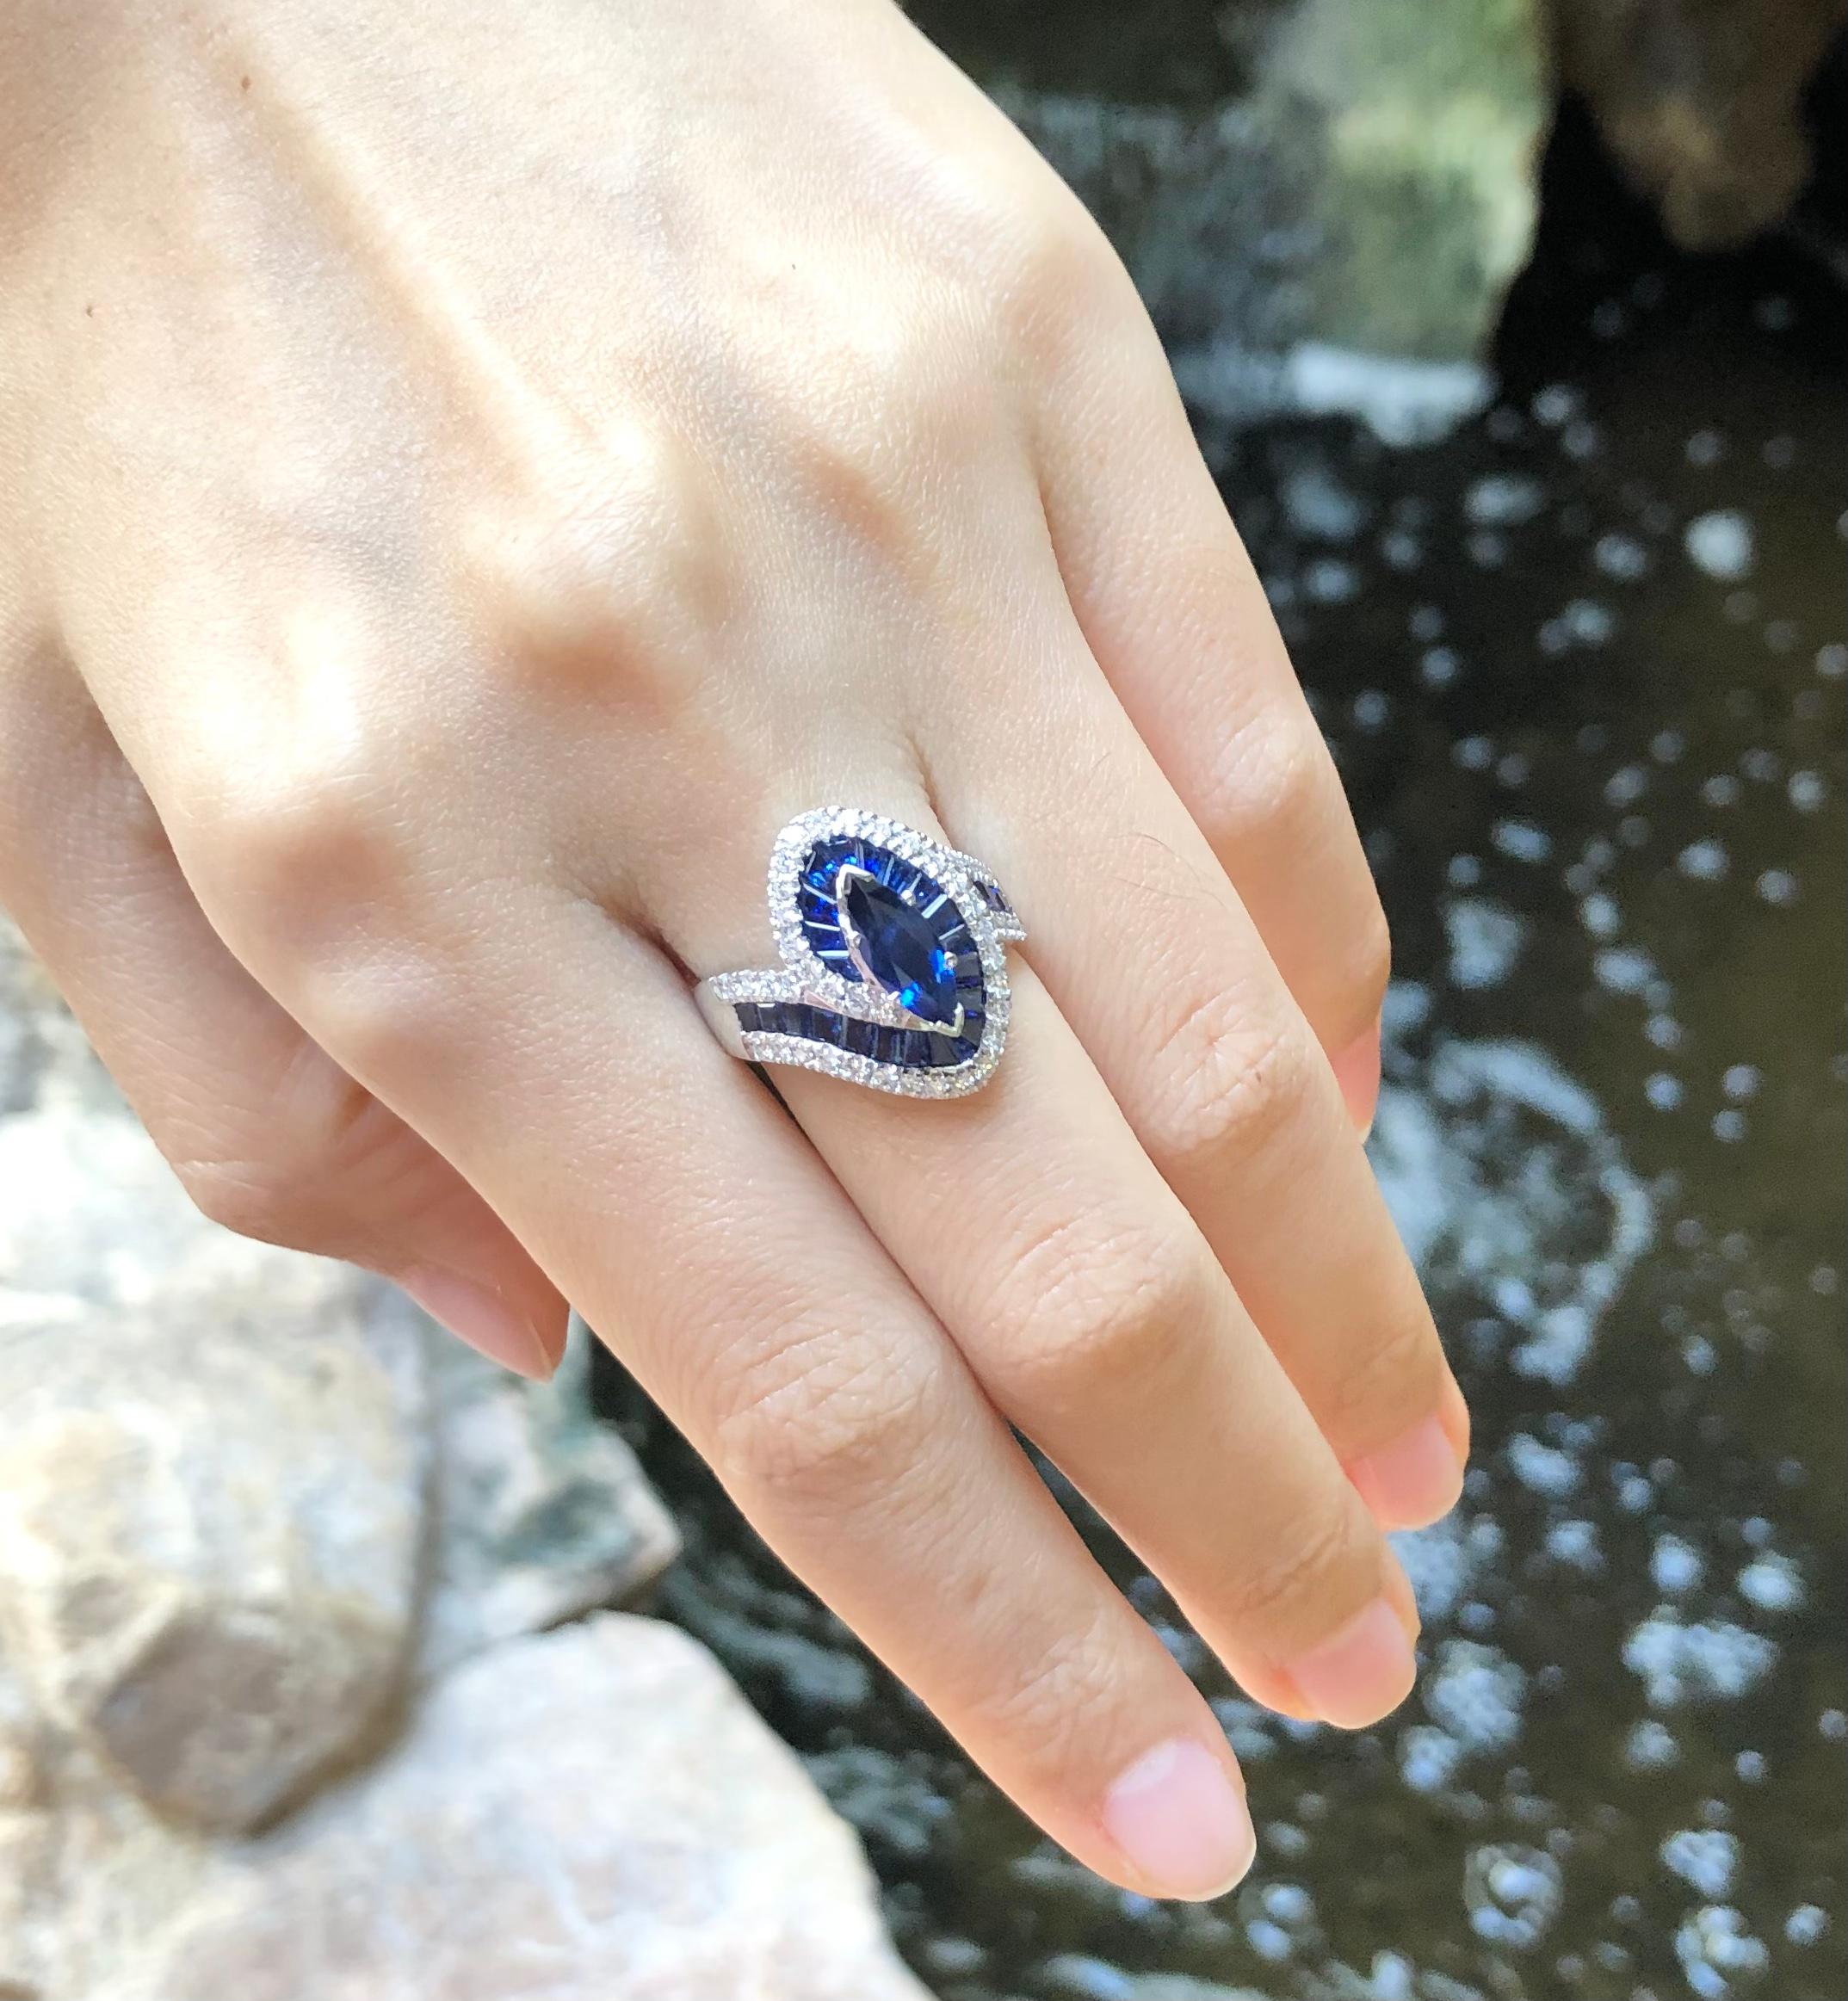 Blue Sapphire 1.01 carats, Blue Sapphire 2.23 carats and Diamond 0.51 carat Ring set in 18 Karat White Gold Settings

Width:  2.0 cm 
Length: 1.9 cm
Ring Size: 52
Total Weight: 7.99 grams

